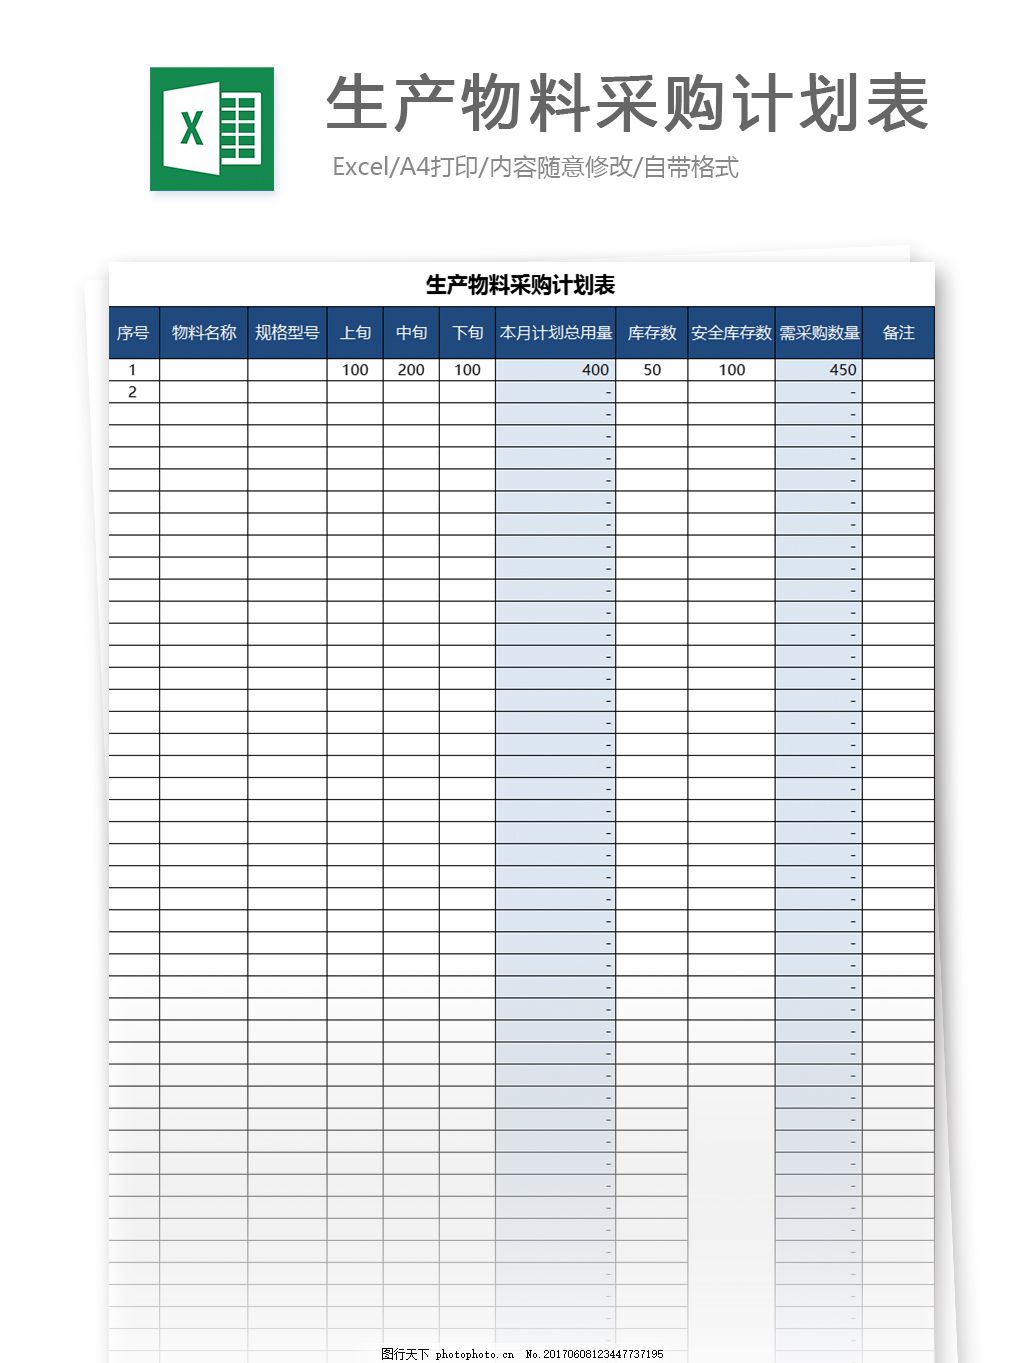 生产计划表模板免费下载-生产计划表Excel模板下载-华军软件园